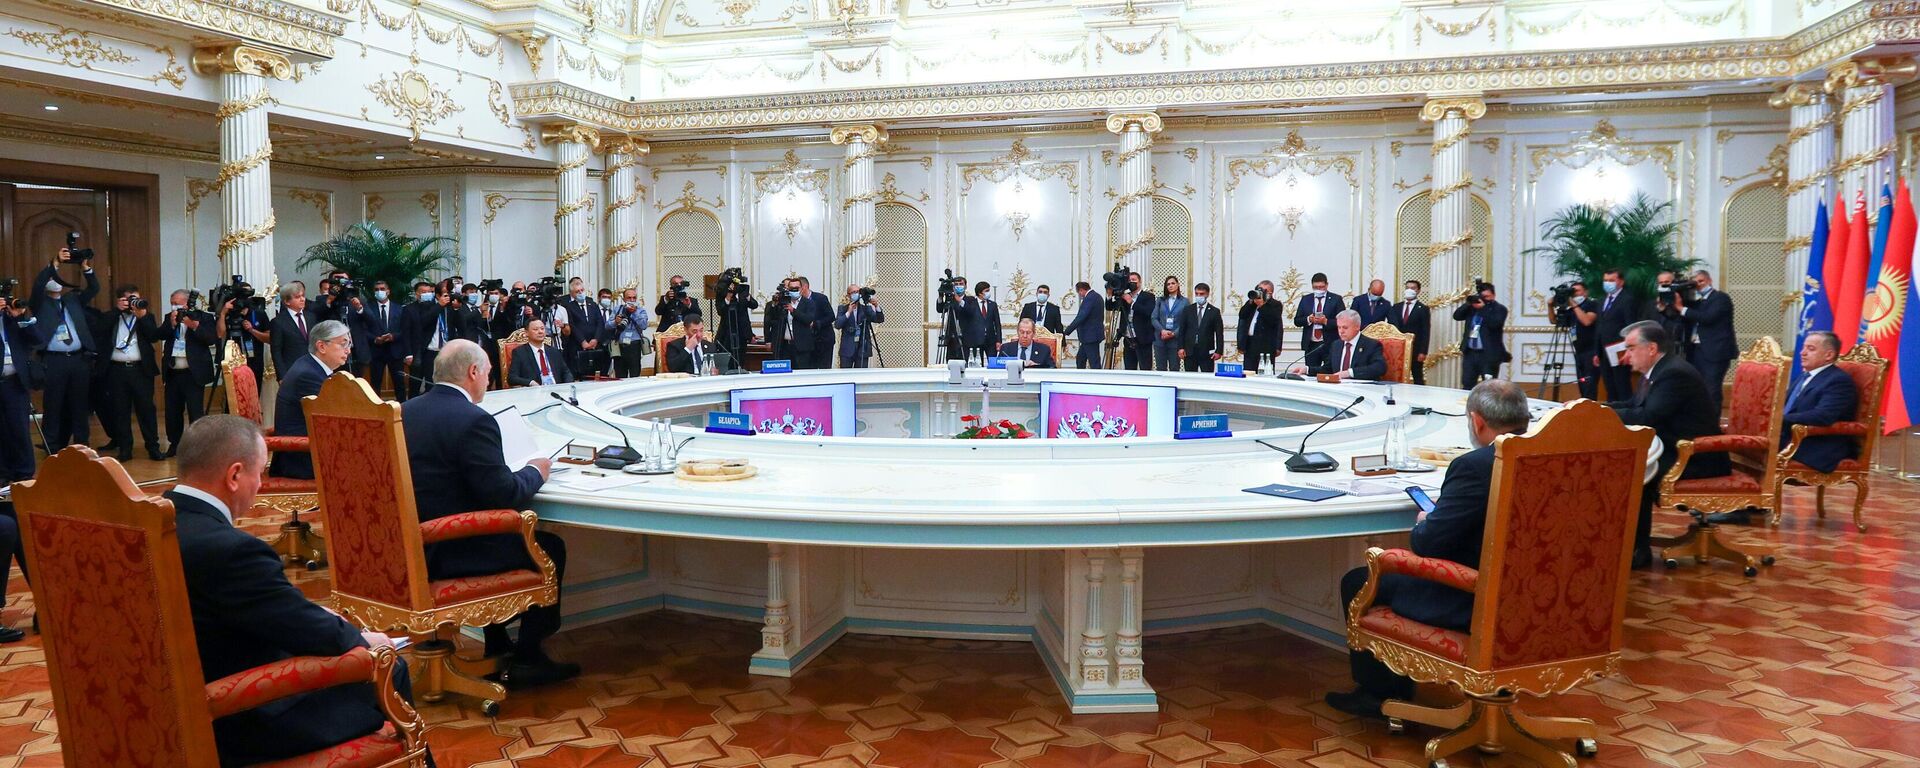 Заседание Совета коллективной безопасности Организации Договора о коллективной безопасности (ОДКБ) - Sputnik Таджикистан, 1920, 16.09.2021